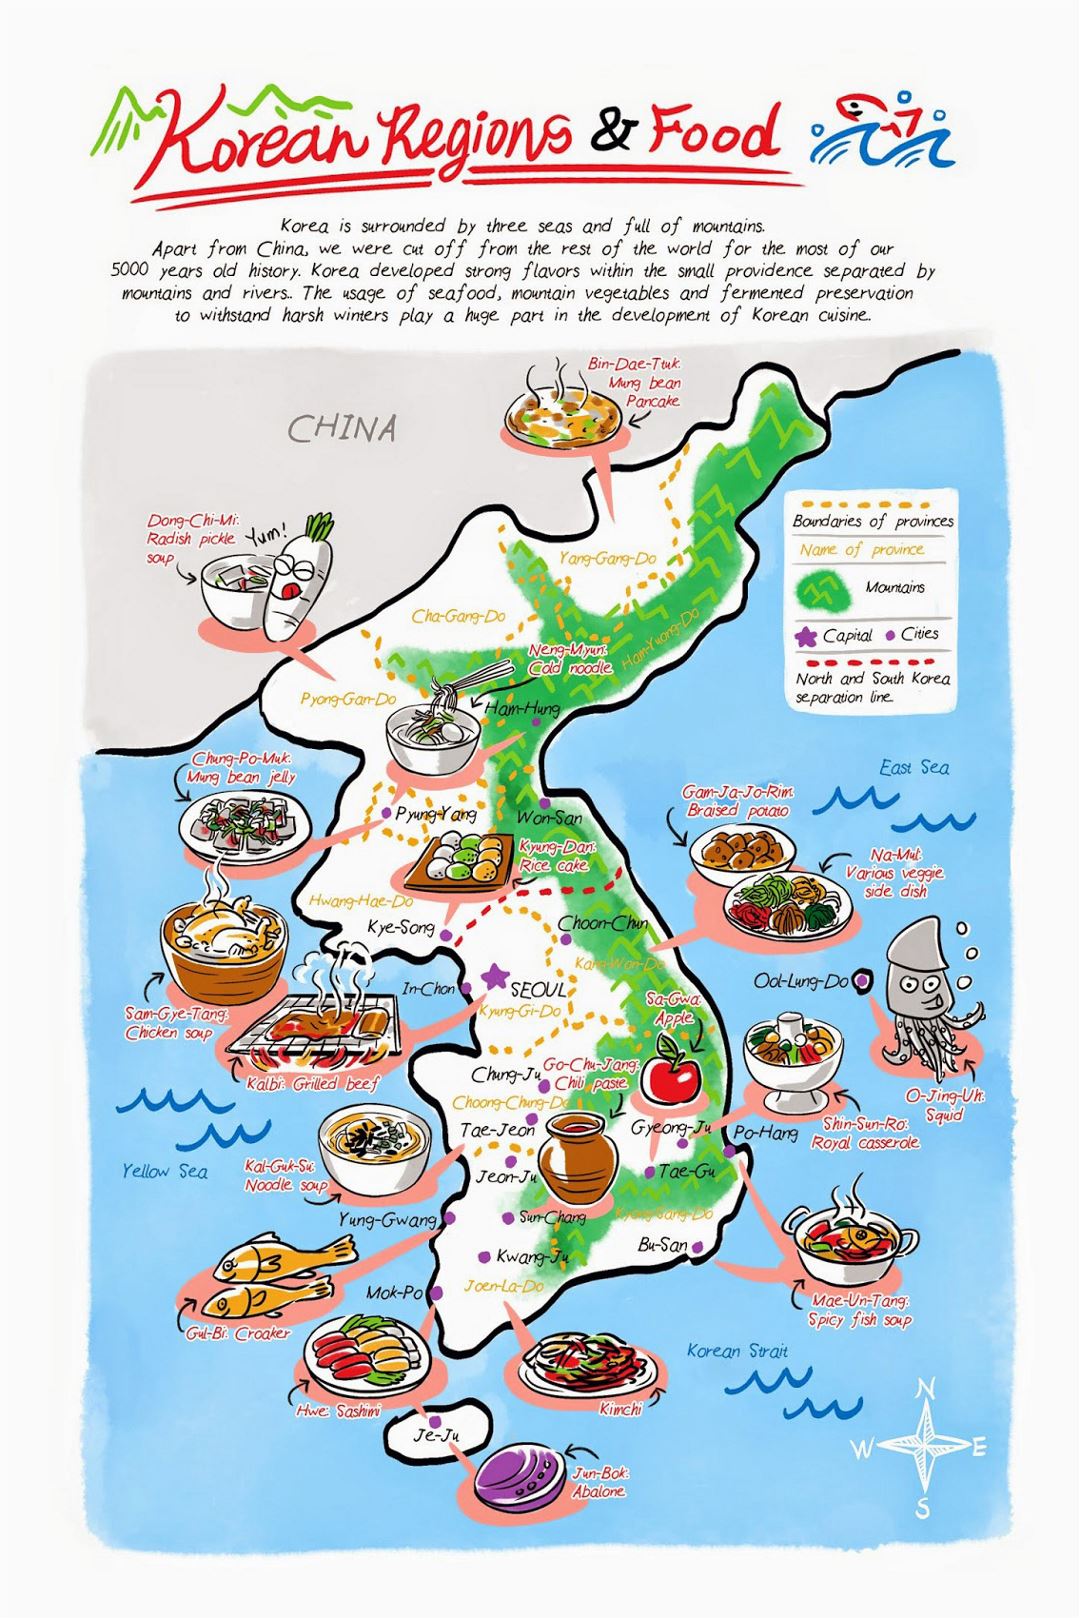 Детальная иллюстрированная карта корейских продовольственных регионов